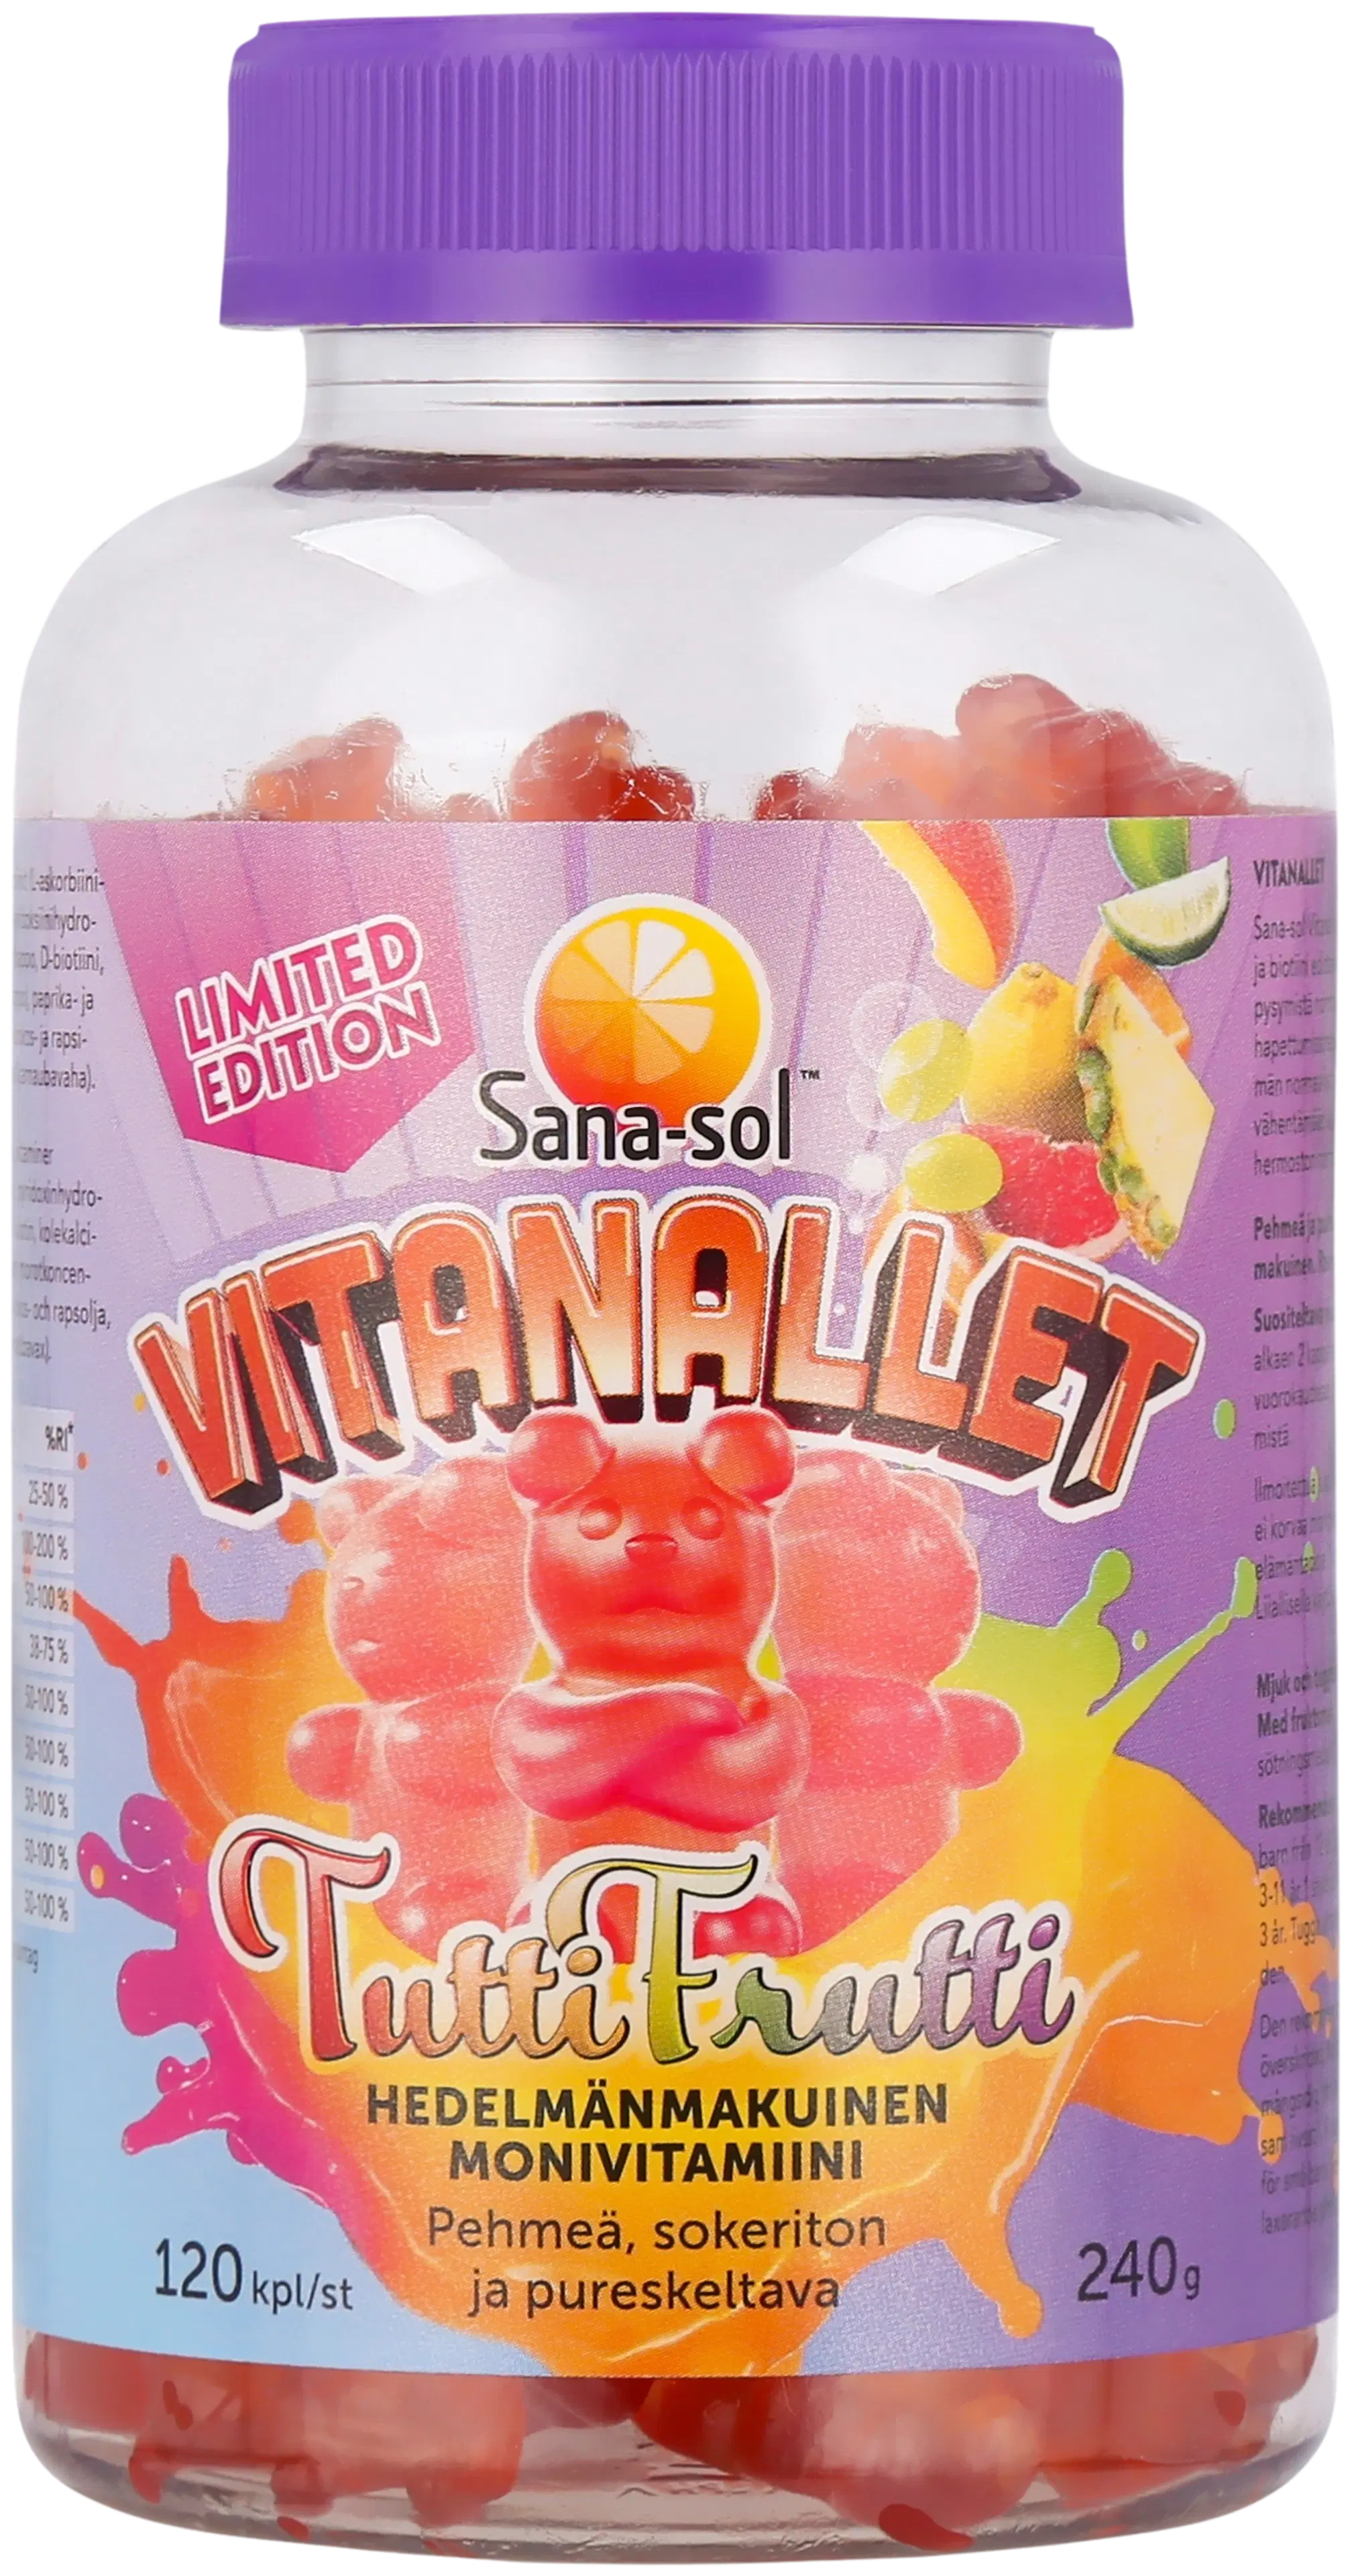 Sana-sol Vitanallet Tuttifrutti Limited Edition pehmeä, sokeriton ja pureskeltava hedelmänmakuinen monivitamiinivalmiste ravintolisä 120kpl / 240g